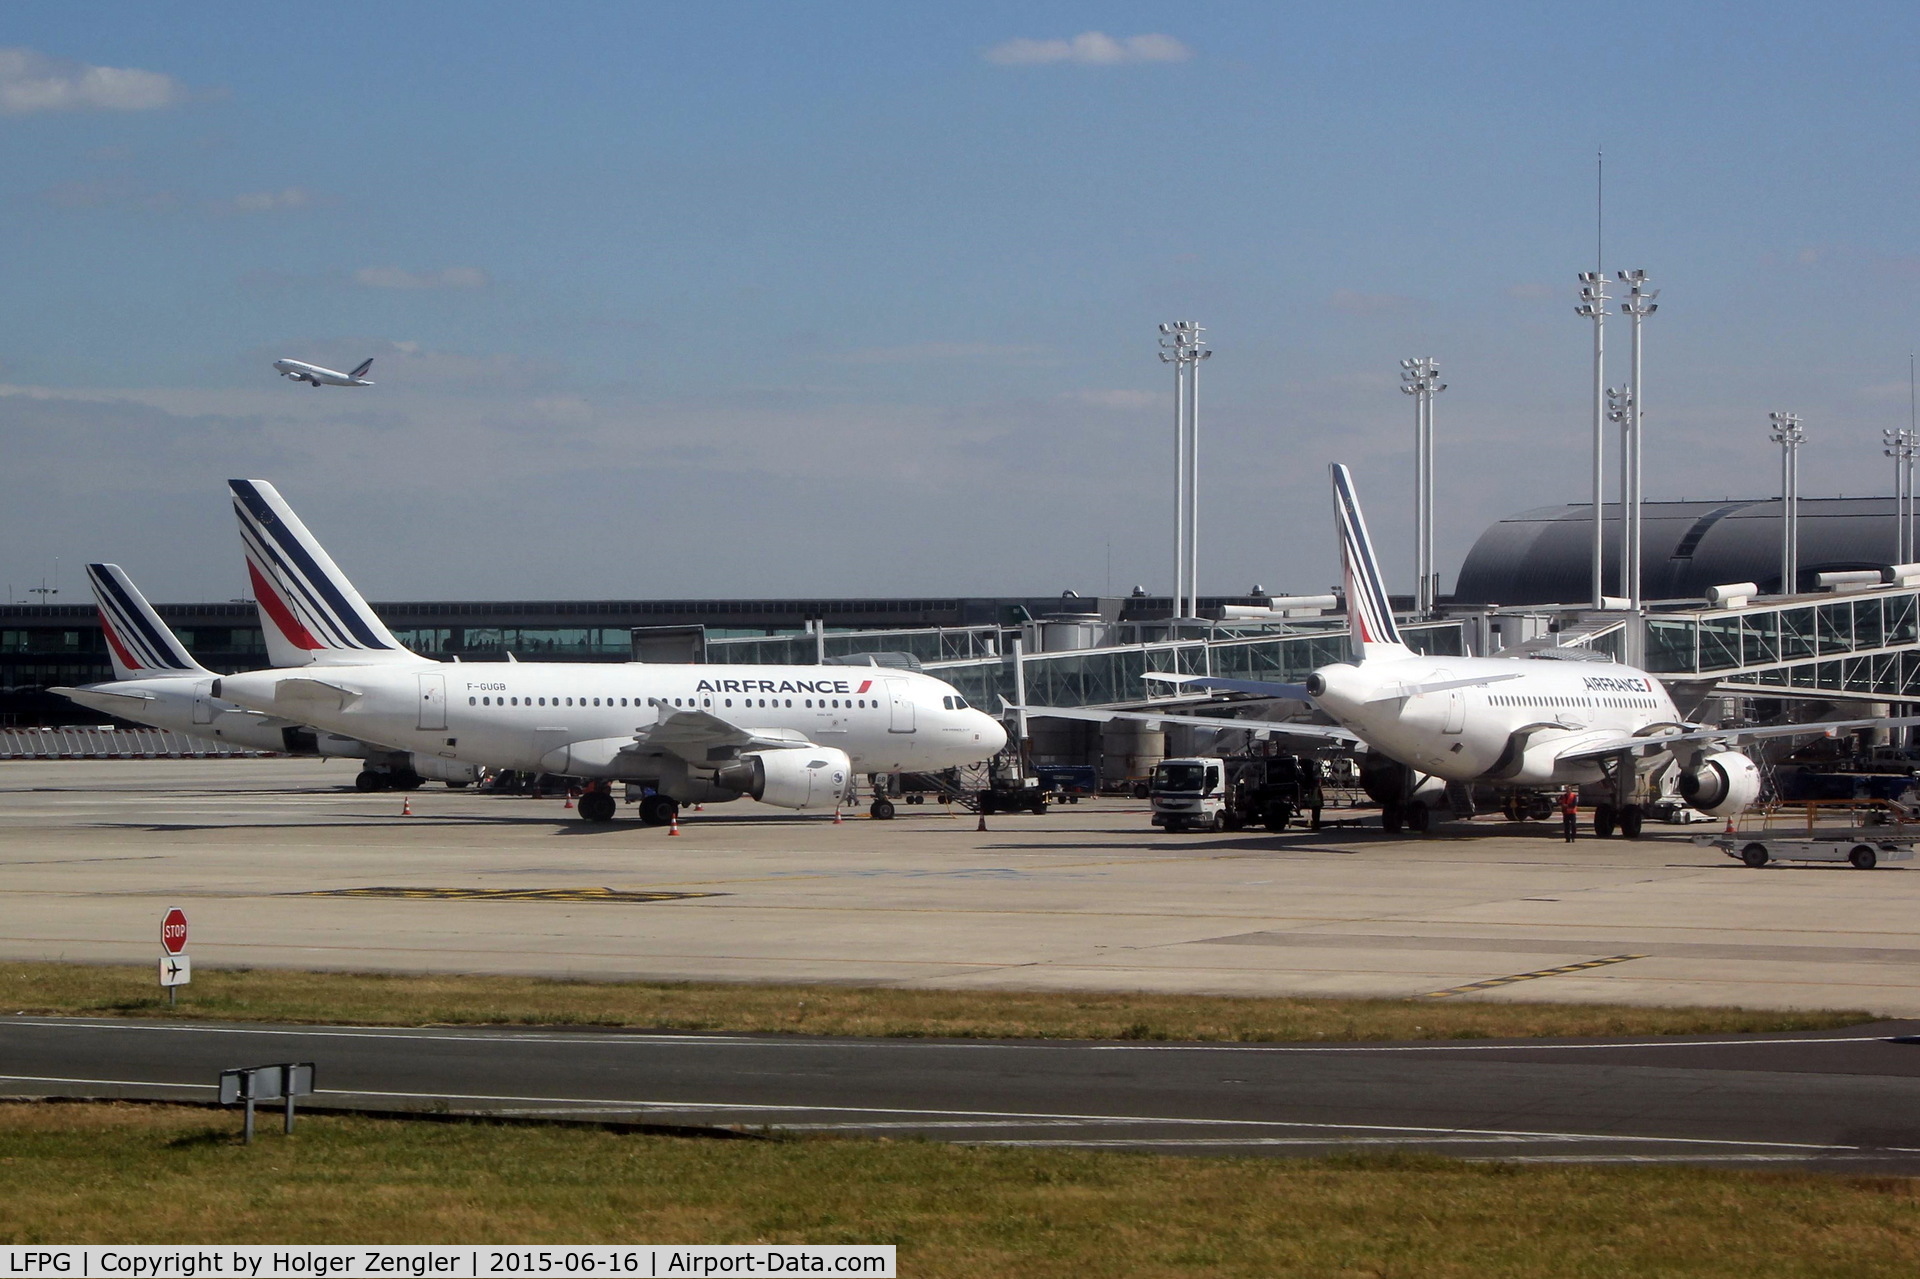 Paris Charles de Gaulle Airport (Roissy Airport), Paris France (LFPG) - Rush hour at terminal 2.....